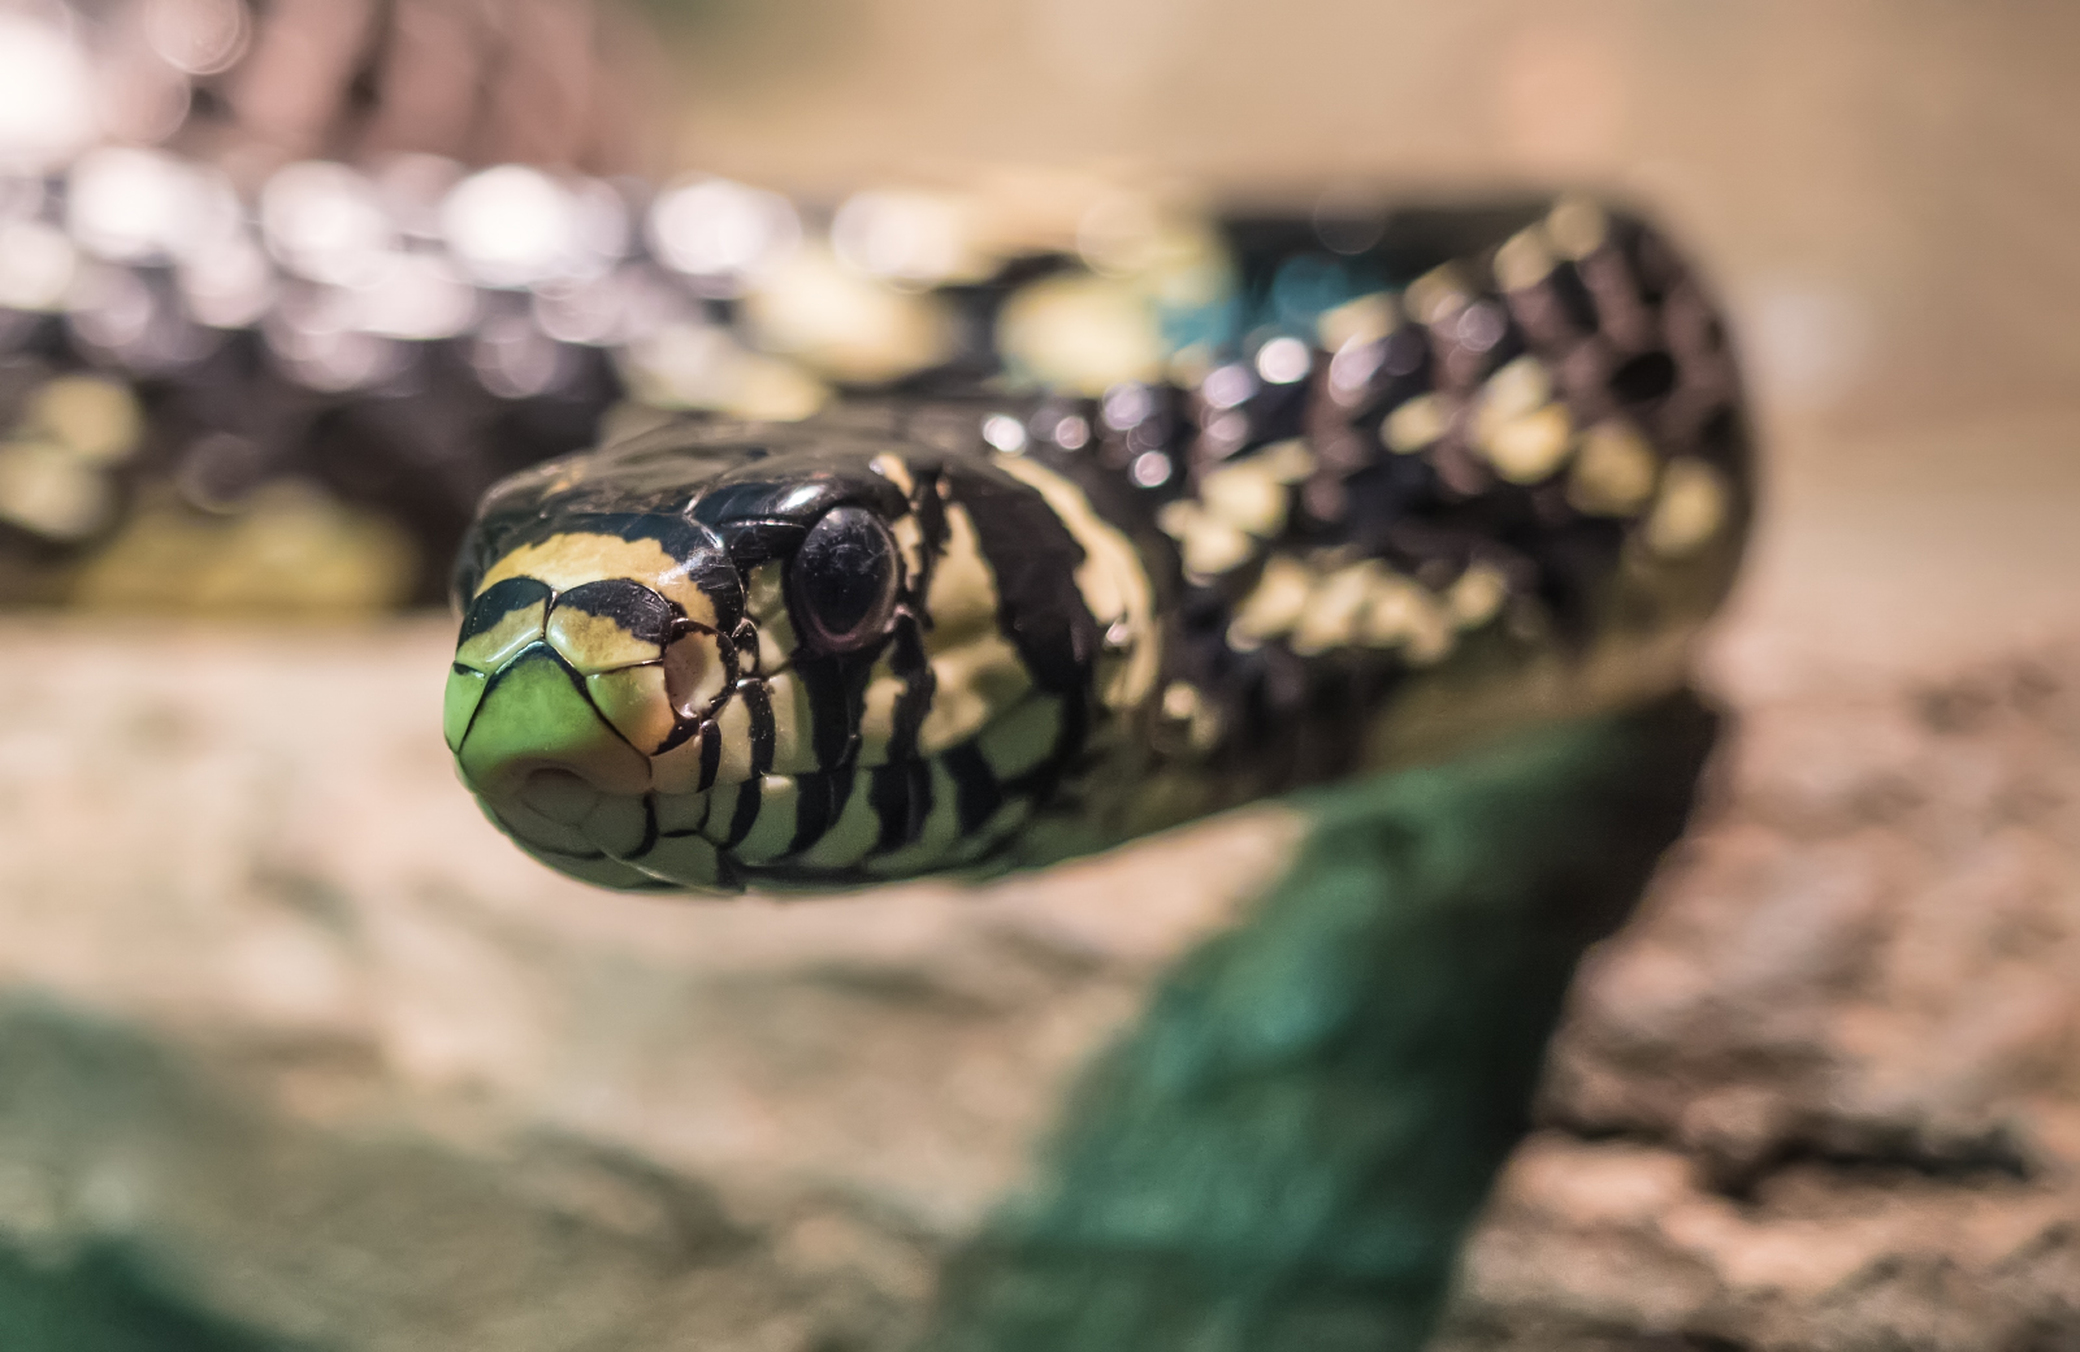 Змея со странным названием "Куроед"